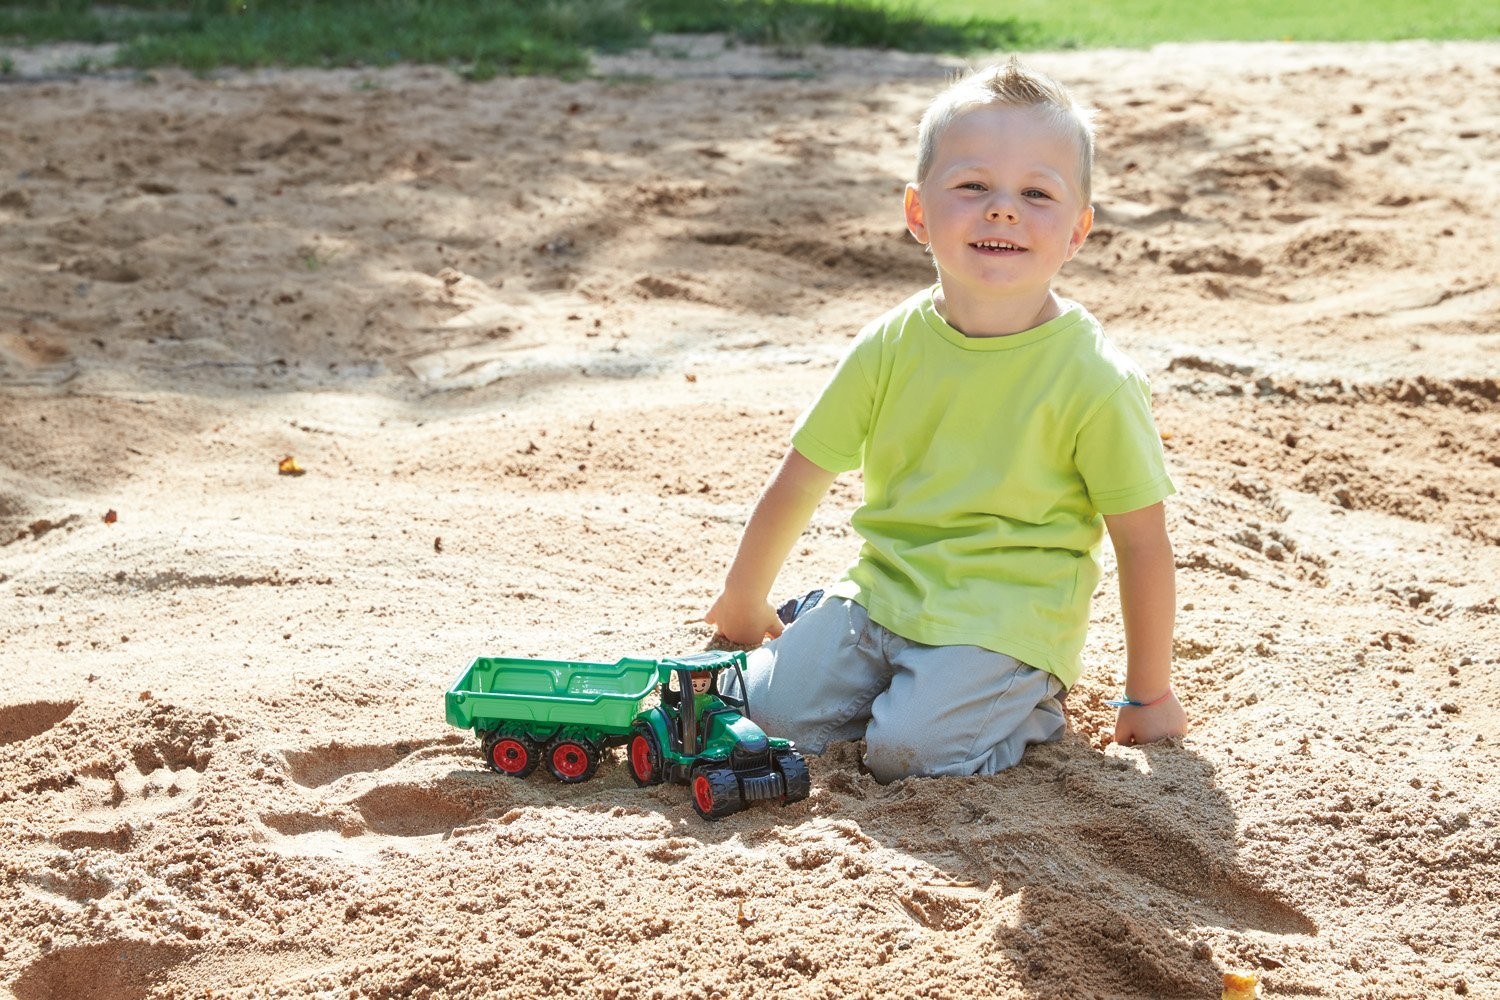 LENA 01625 - Truckies Traktor mit Anhänger, mit Spielfigur, Sandspielzeug